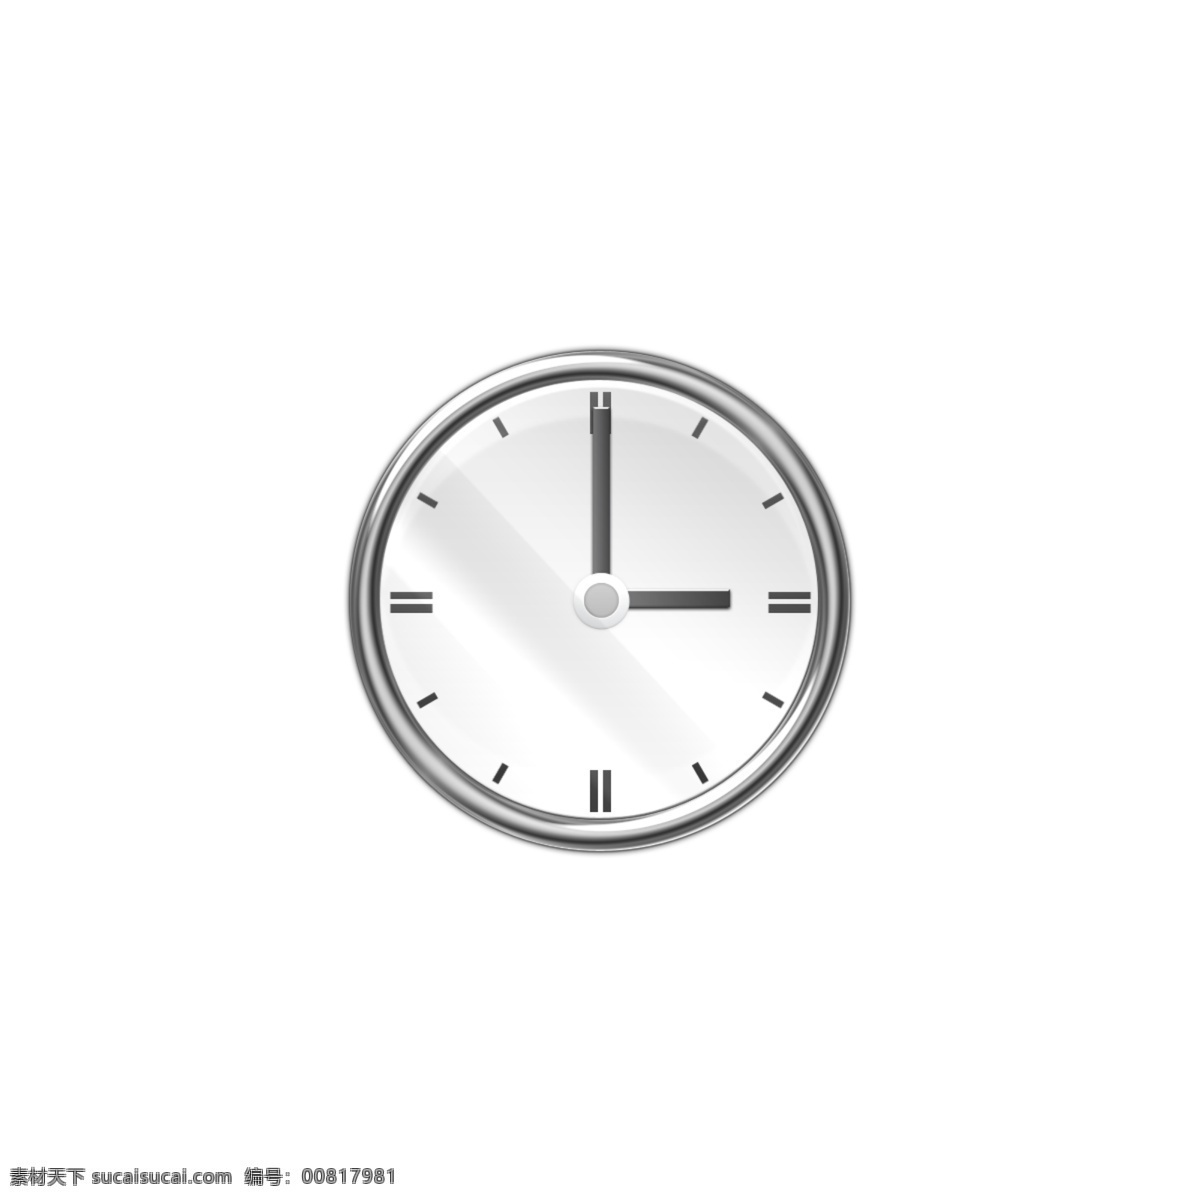 银白色 式 悬挂 时钟 icon 图标 网页图标 icon图标 时钟图标 时钟图标设计 时钟icon 钟表图标 钟表 银色日历 悬挂闹钟 钟表时钟